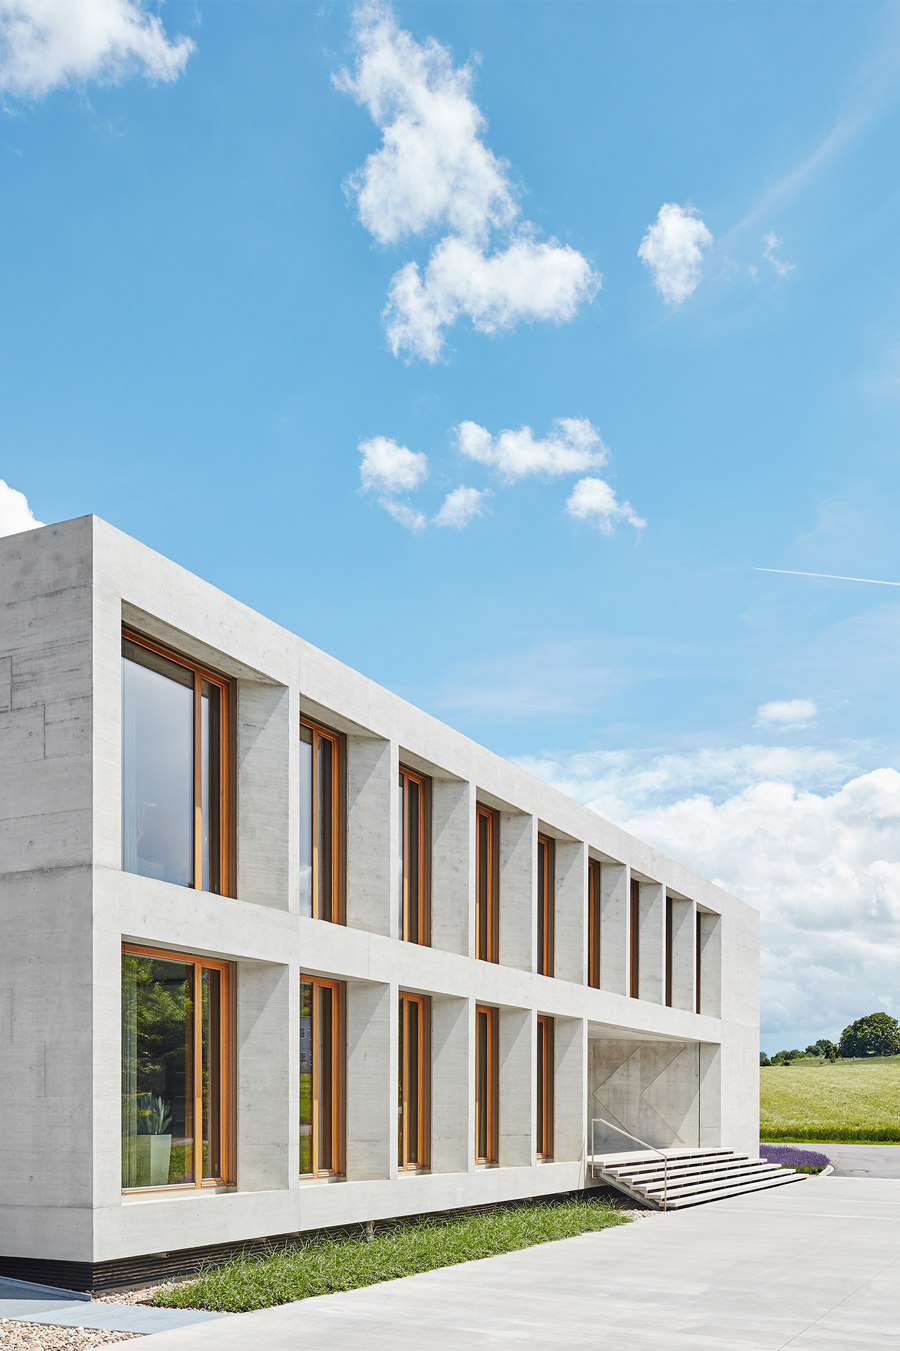 Karl Köhler GmbH by Wittfoht Architekten | Office buildings